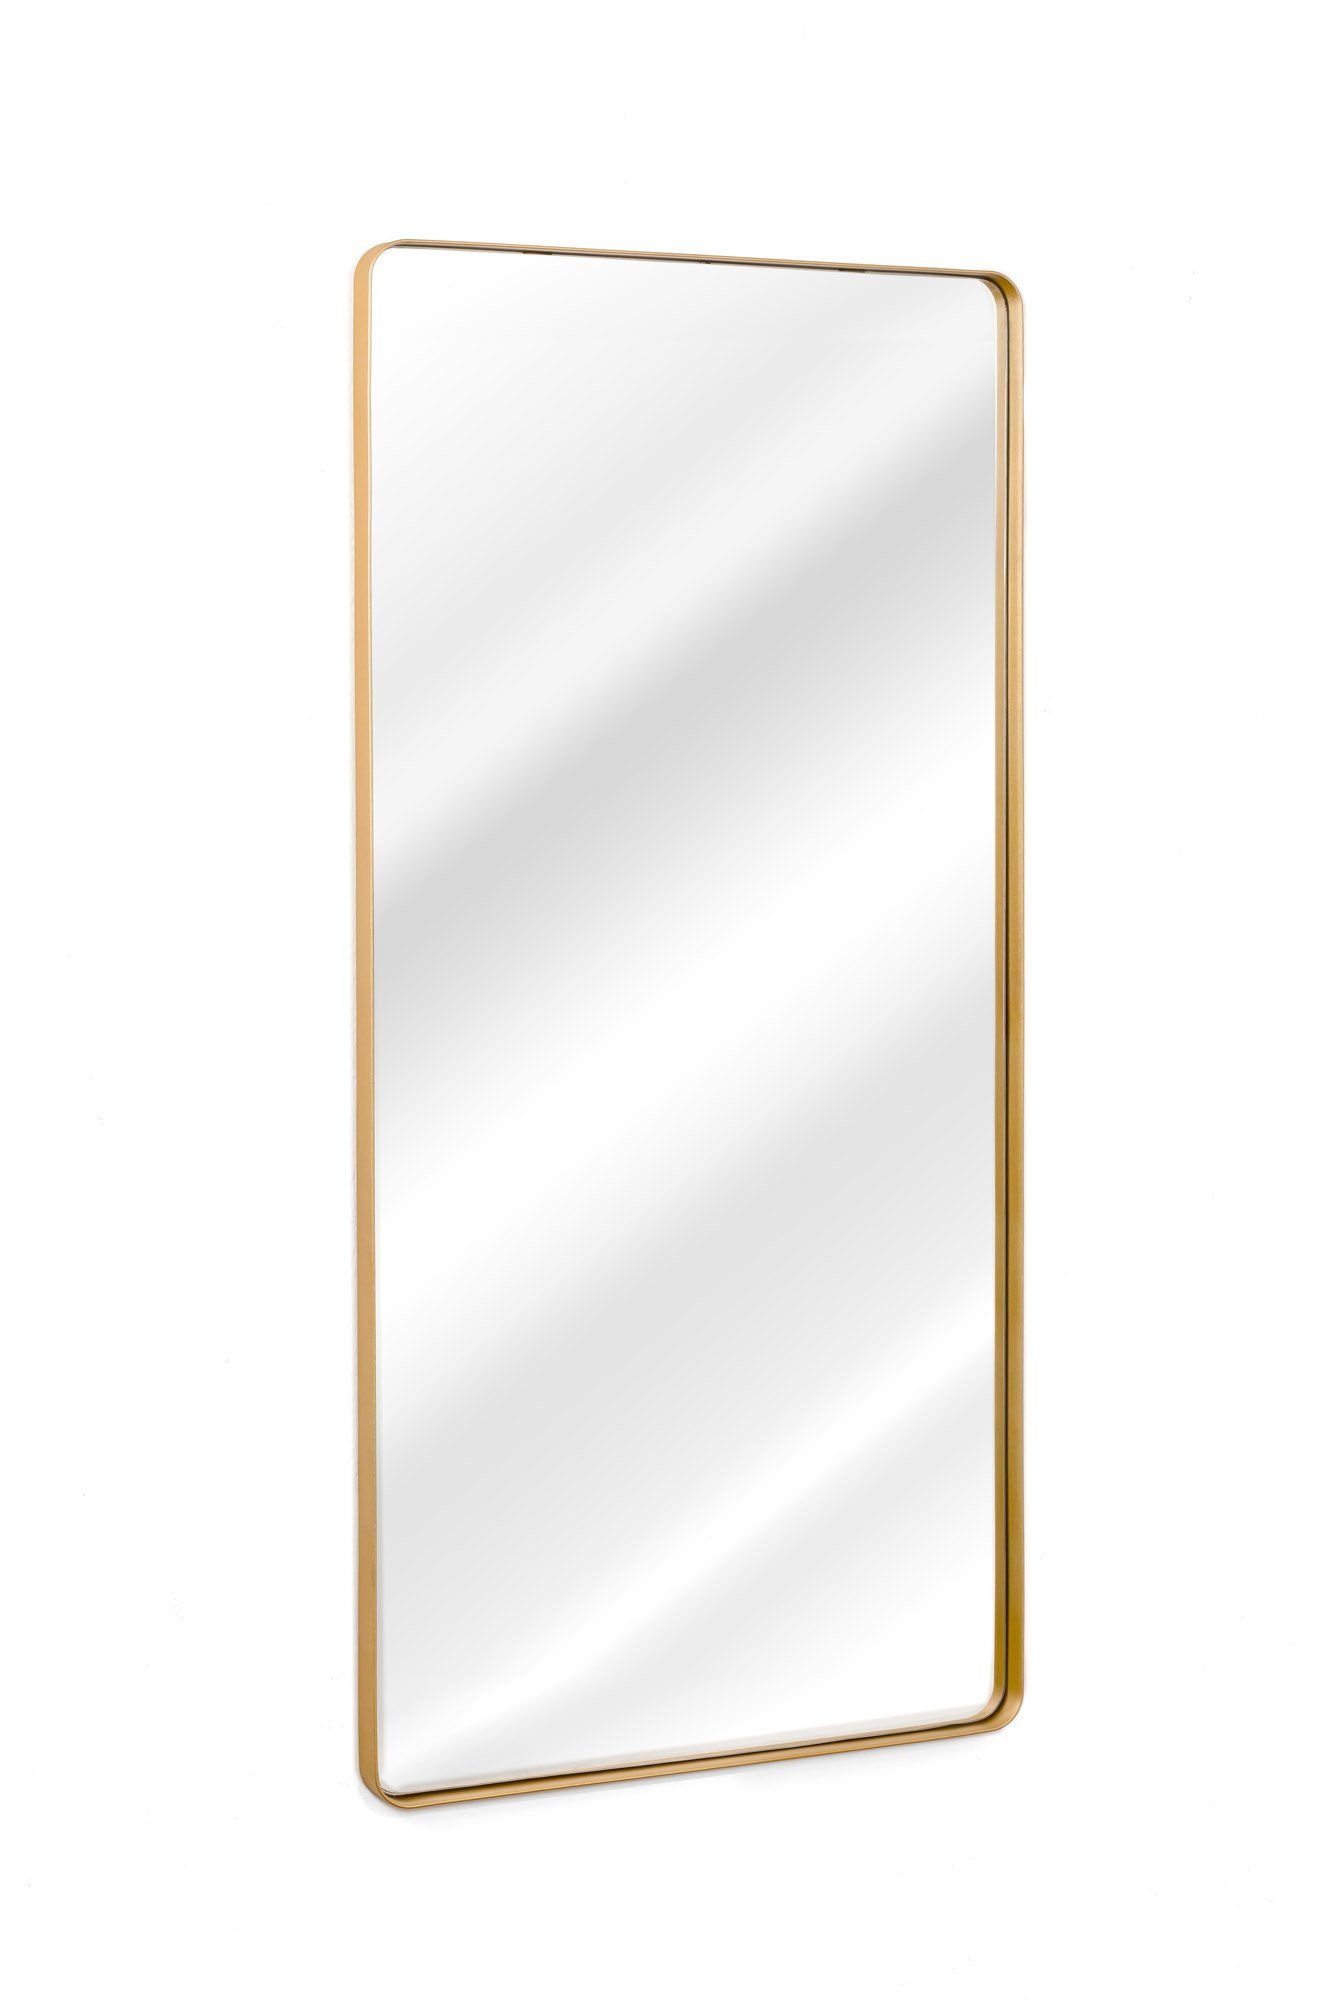 Espelho Grande Corpo Inteiro de Parede Retangular com Moldura em Metal 170 X 70cm Dourado - 3